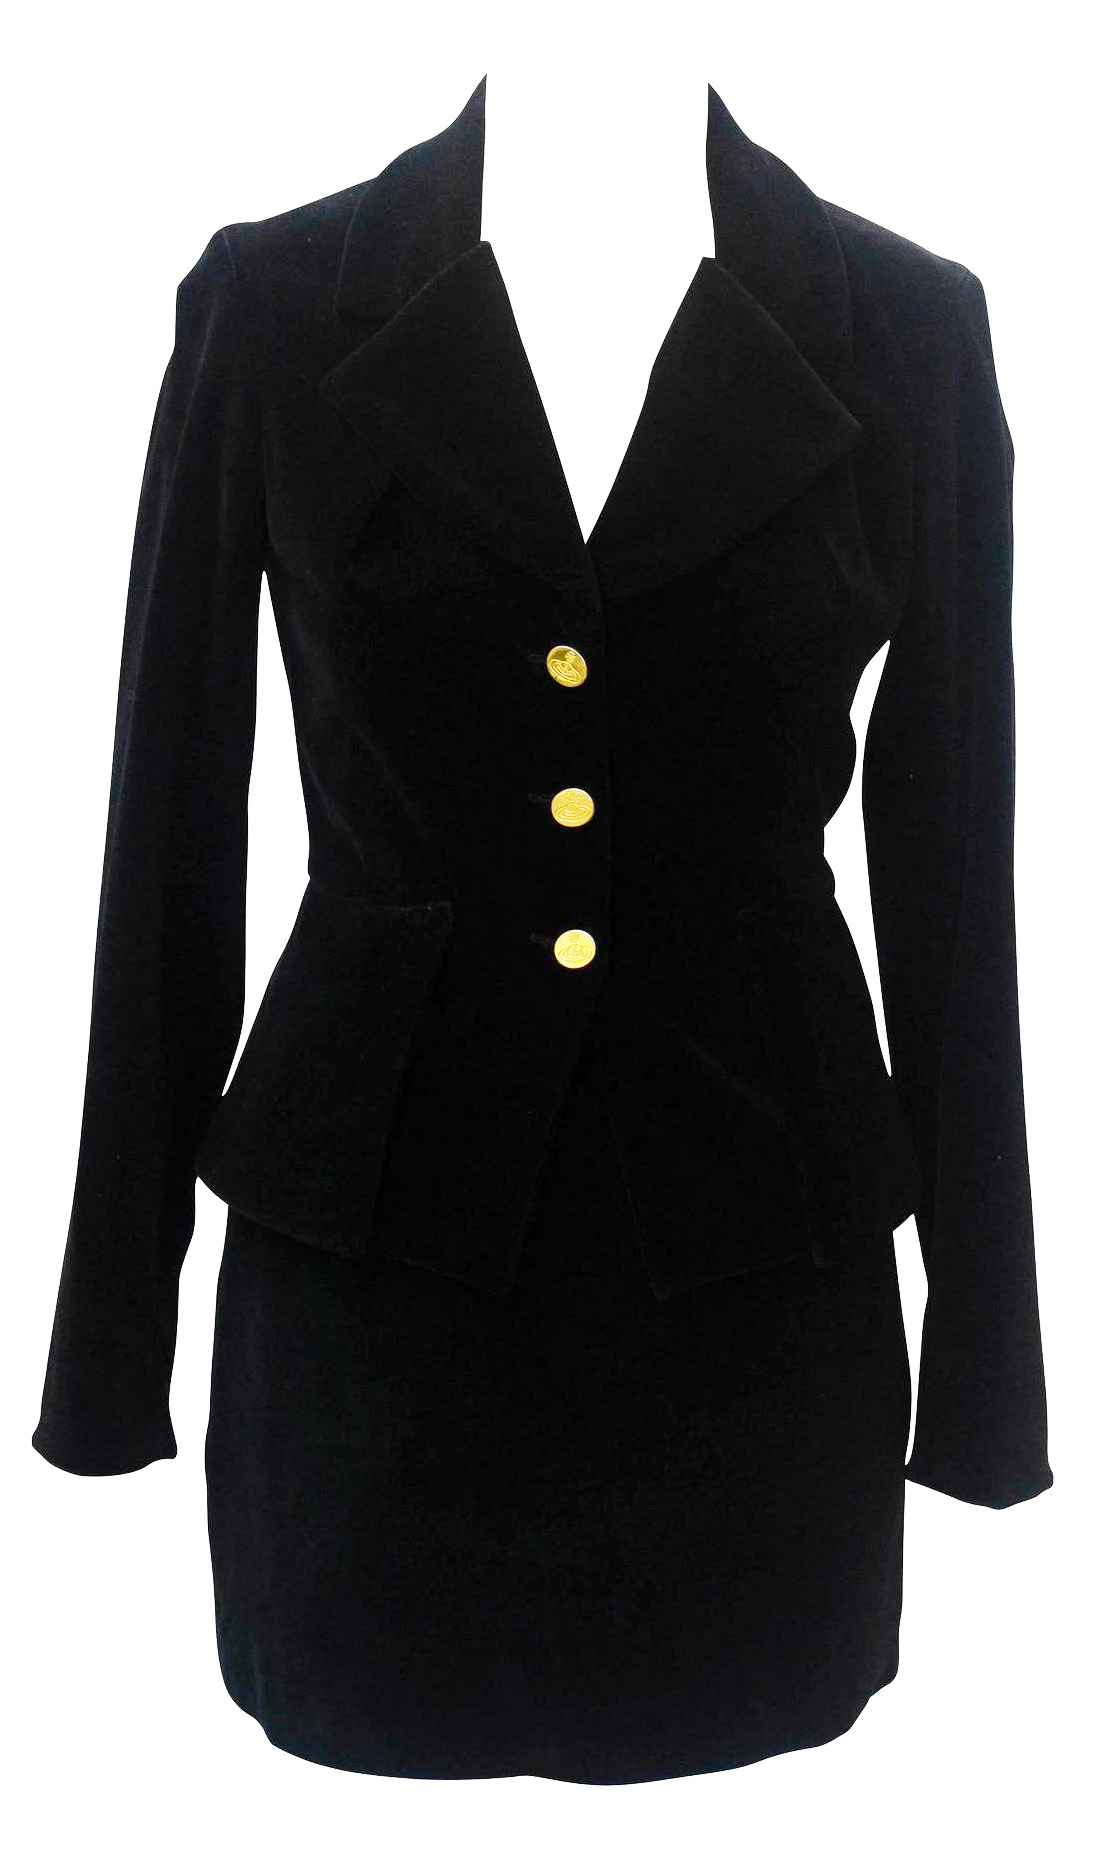 Vivienne Westwood VELVET BETTINA SUIT Description: Black stretch velvet suit...